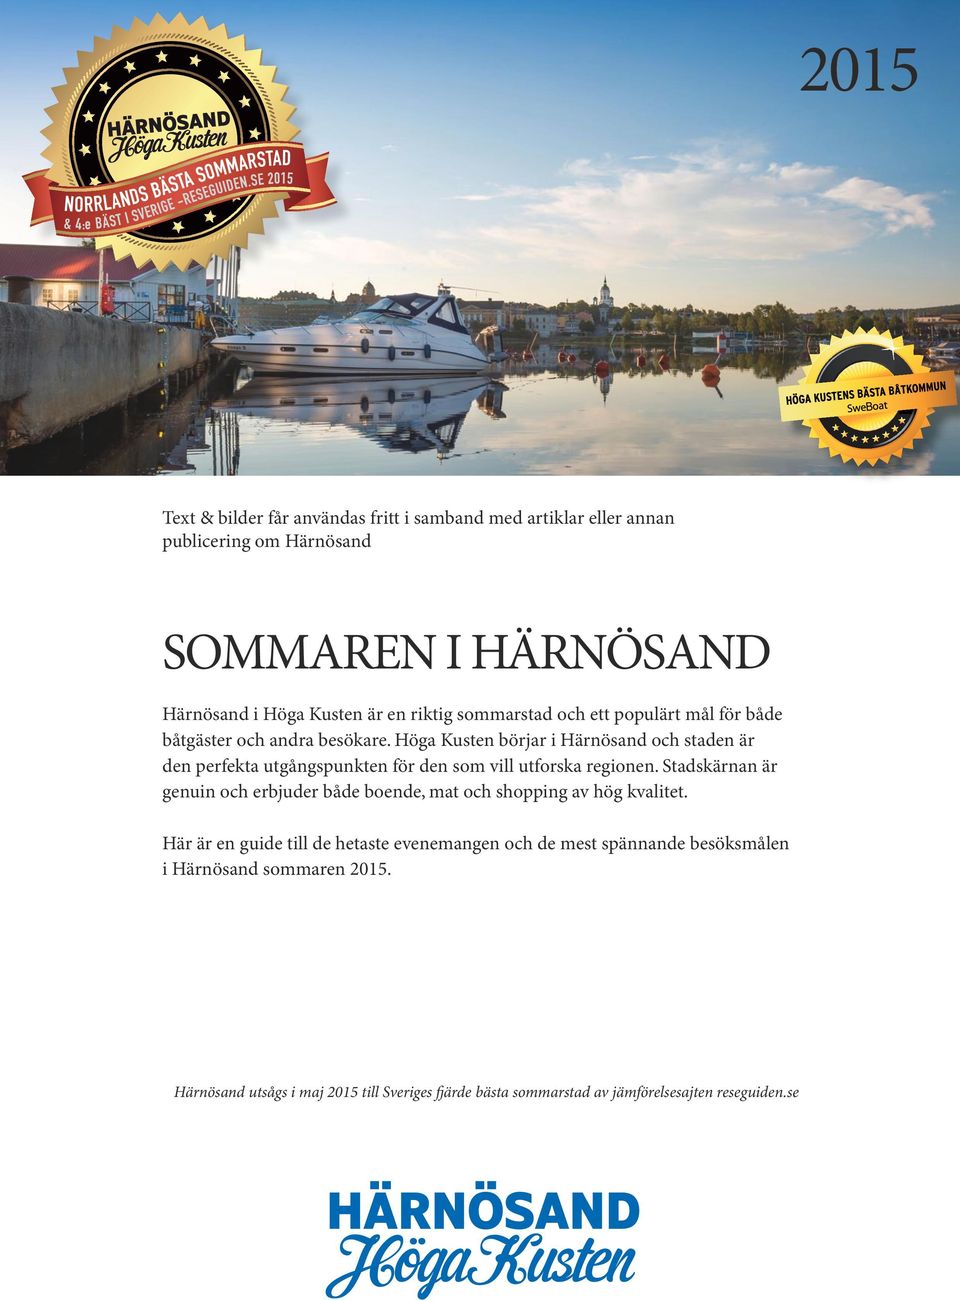 Höga Kusten börjar i Härnösand och staden är den perfekta utgångspunkten för den som vill utforska regionen.